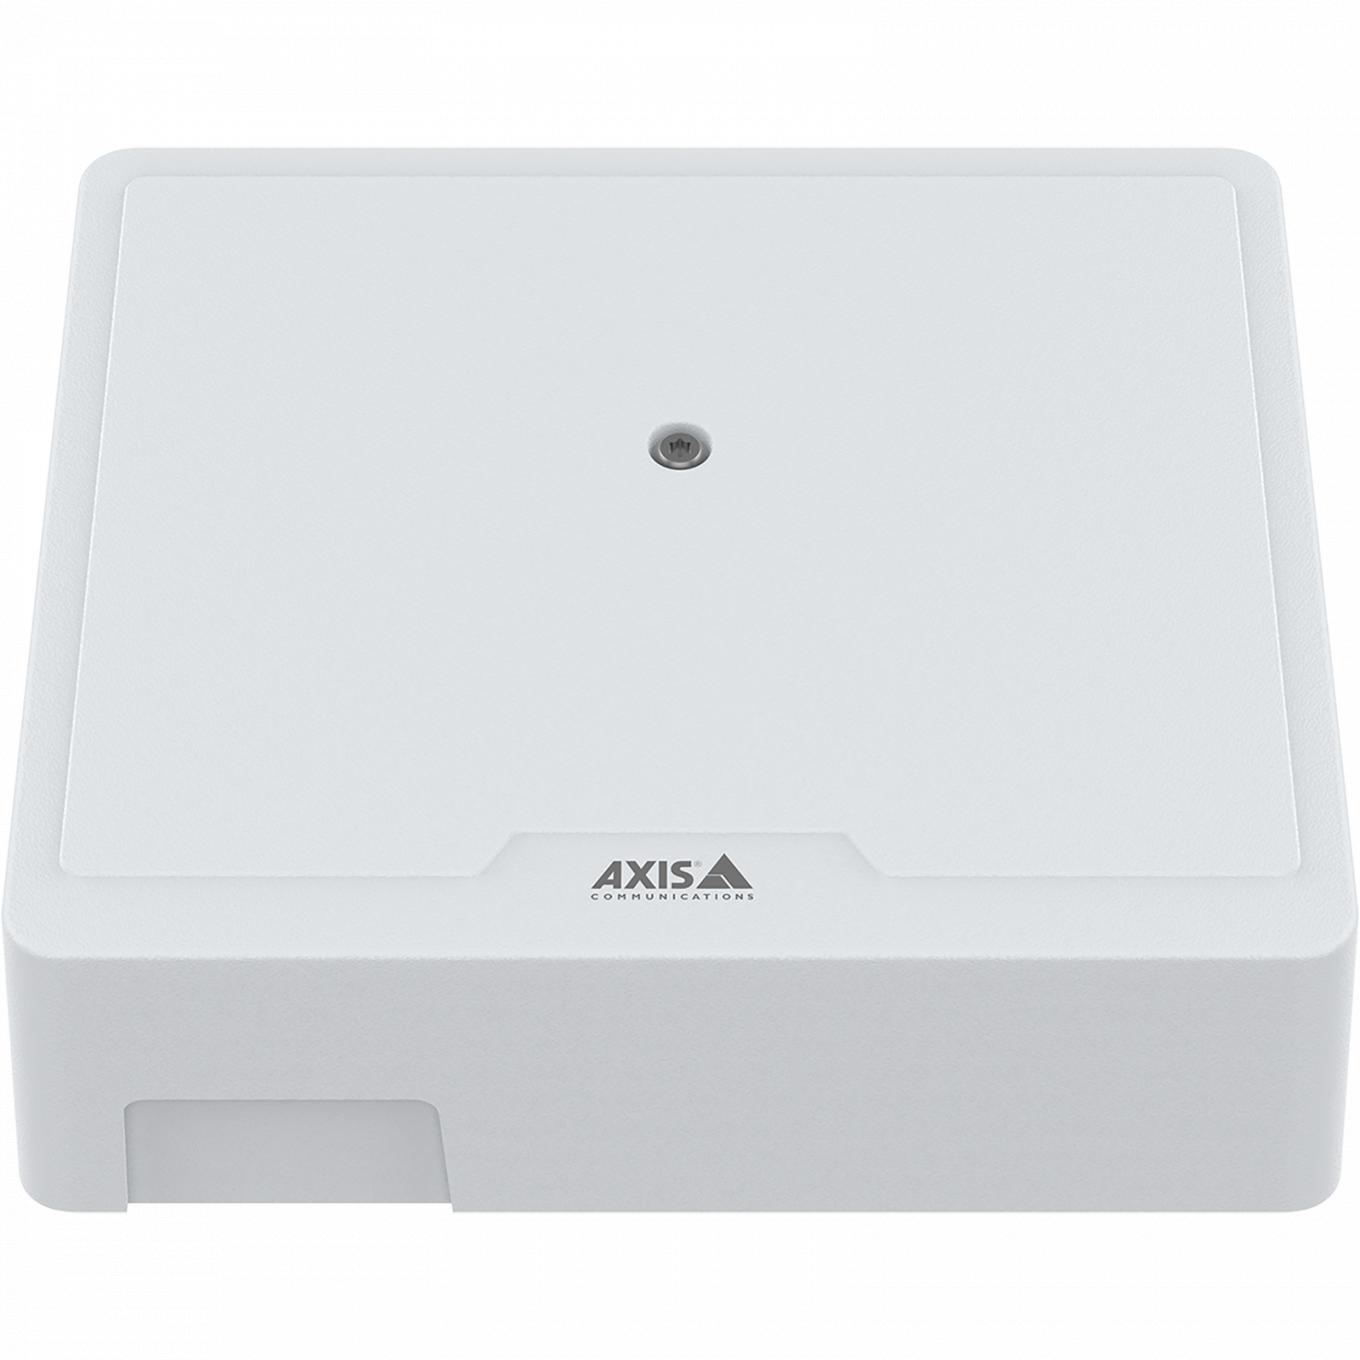 AXIS A1210 Network Door Controller, visto dalla parte anteriore